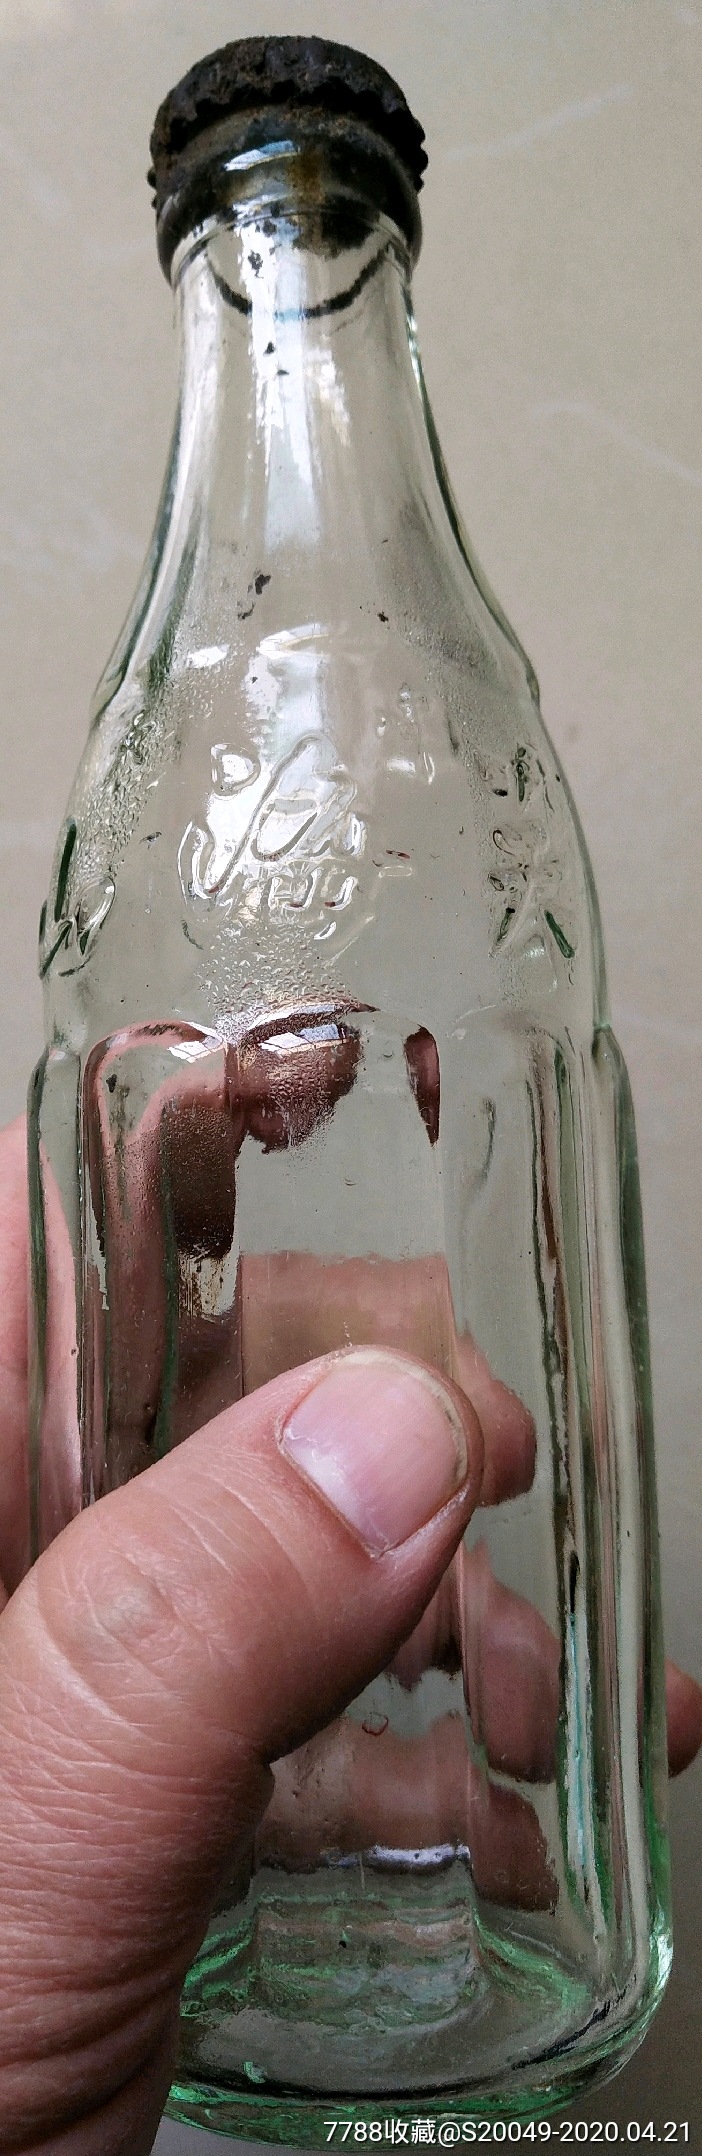 七八十年代玻璃瓶汽水图片